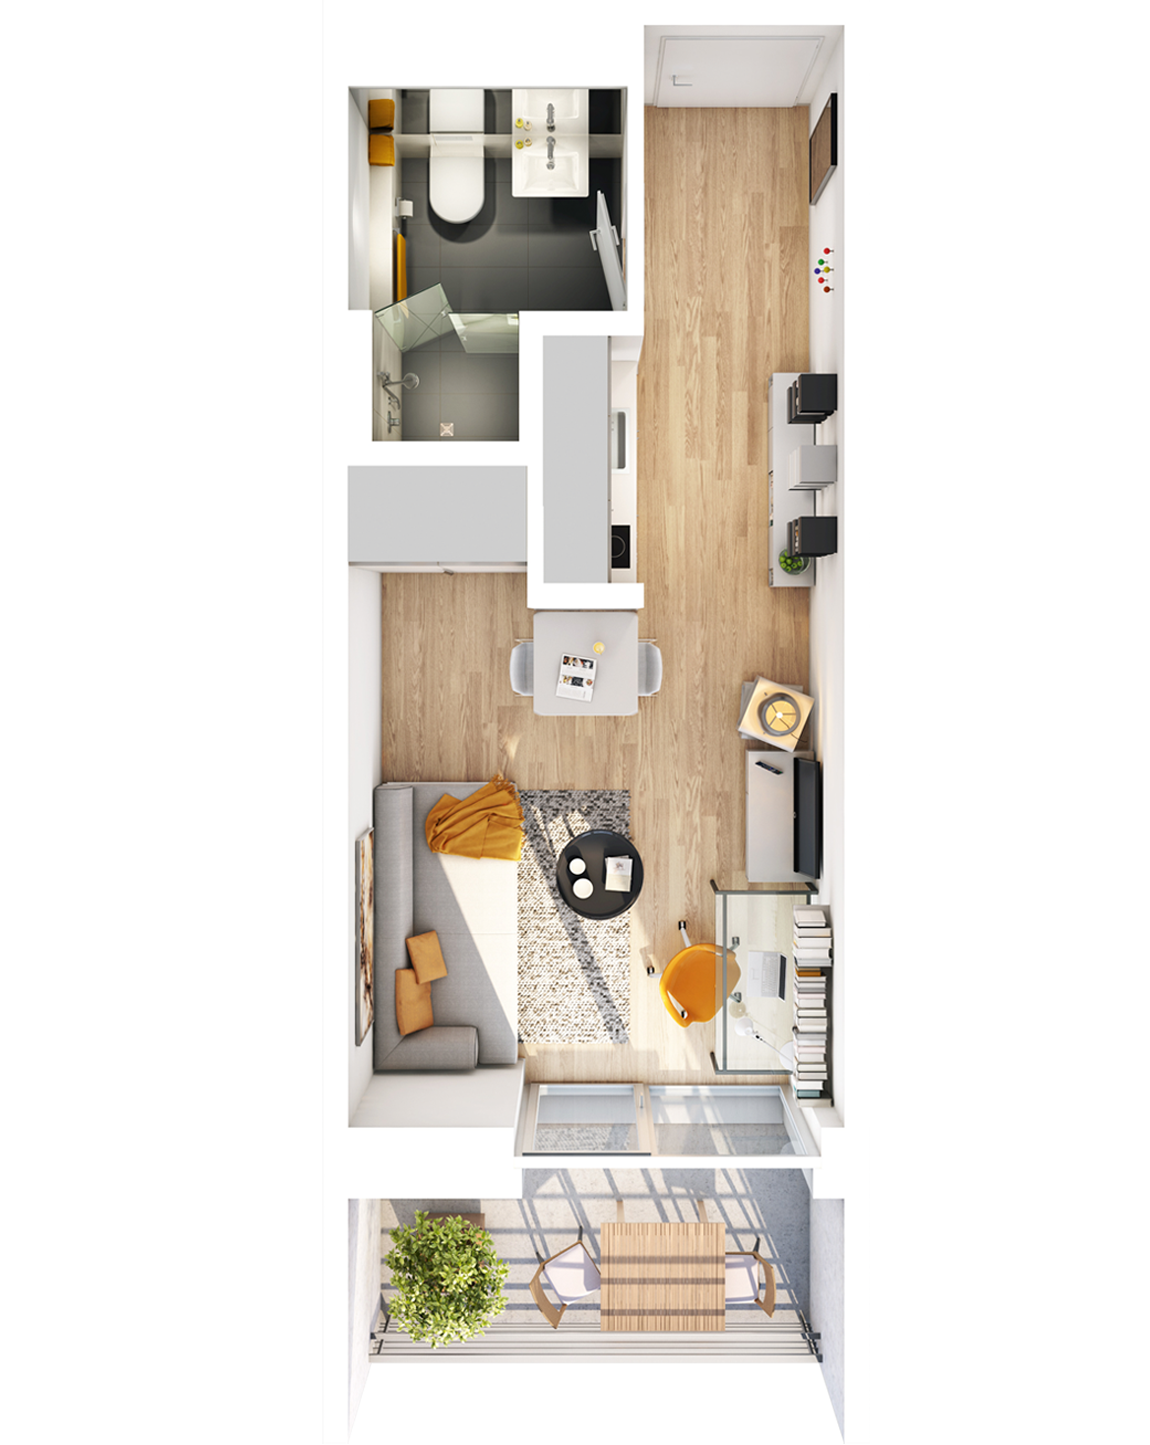 Visualisierung Beispiel 1-Zimmer-Wohnung Typ A mit Bad, Küchenzeile, Wohnbereich und Balkon im studiosus 5 Apartmenthaus in Augsburg